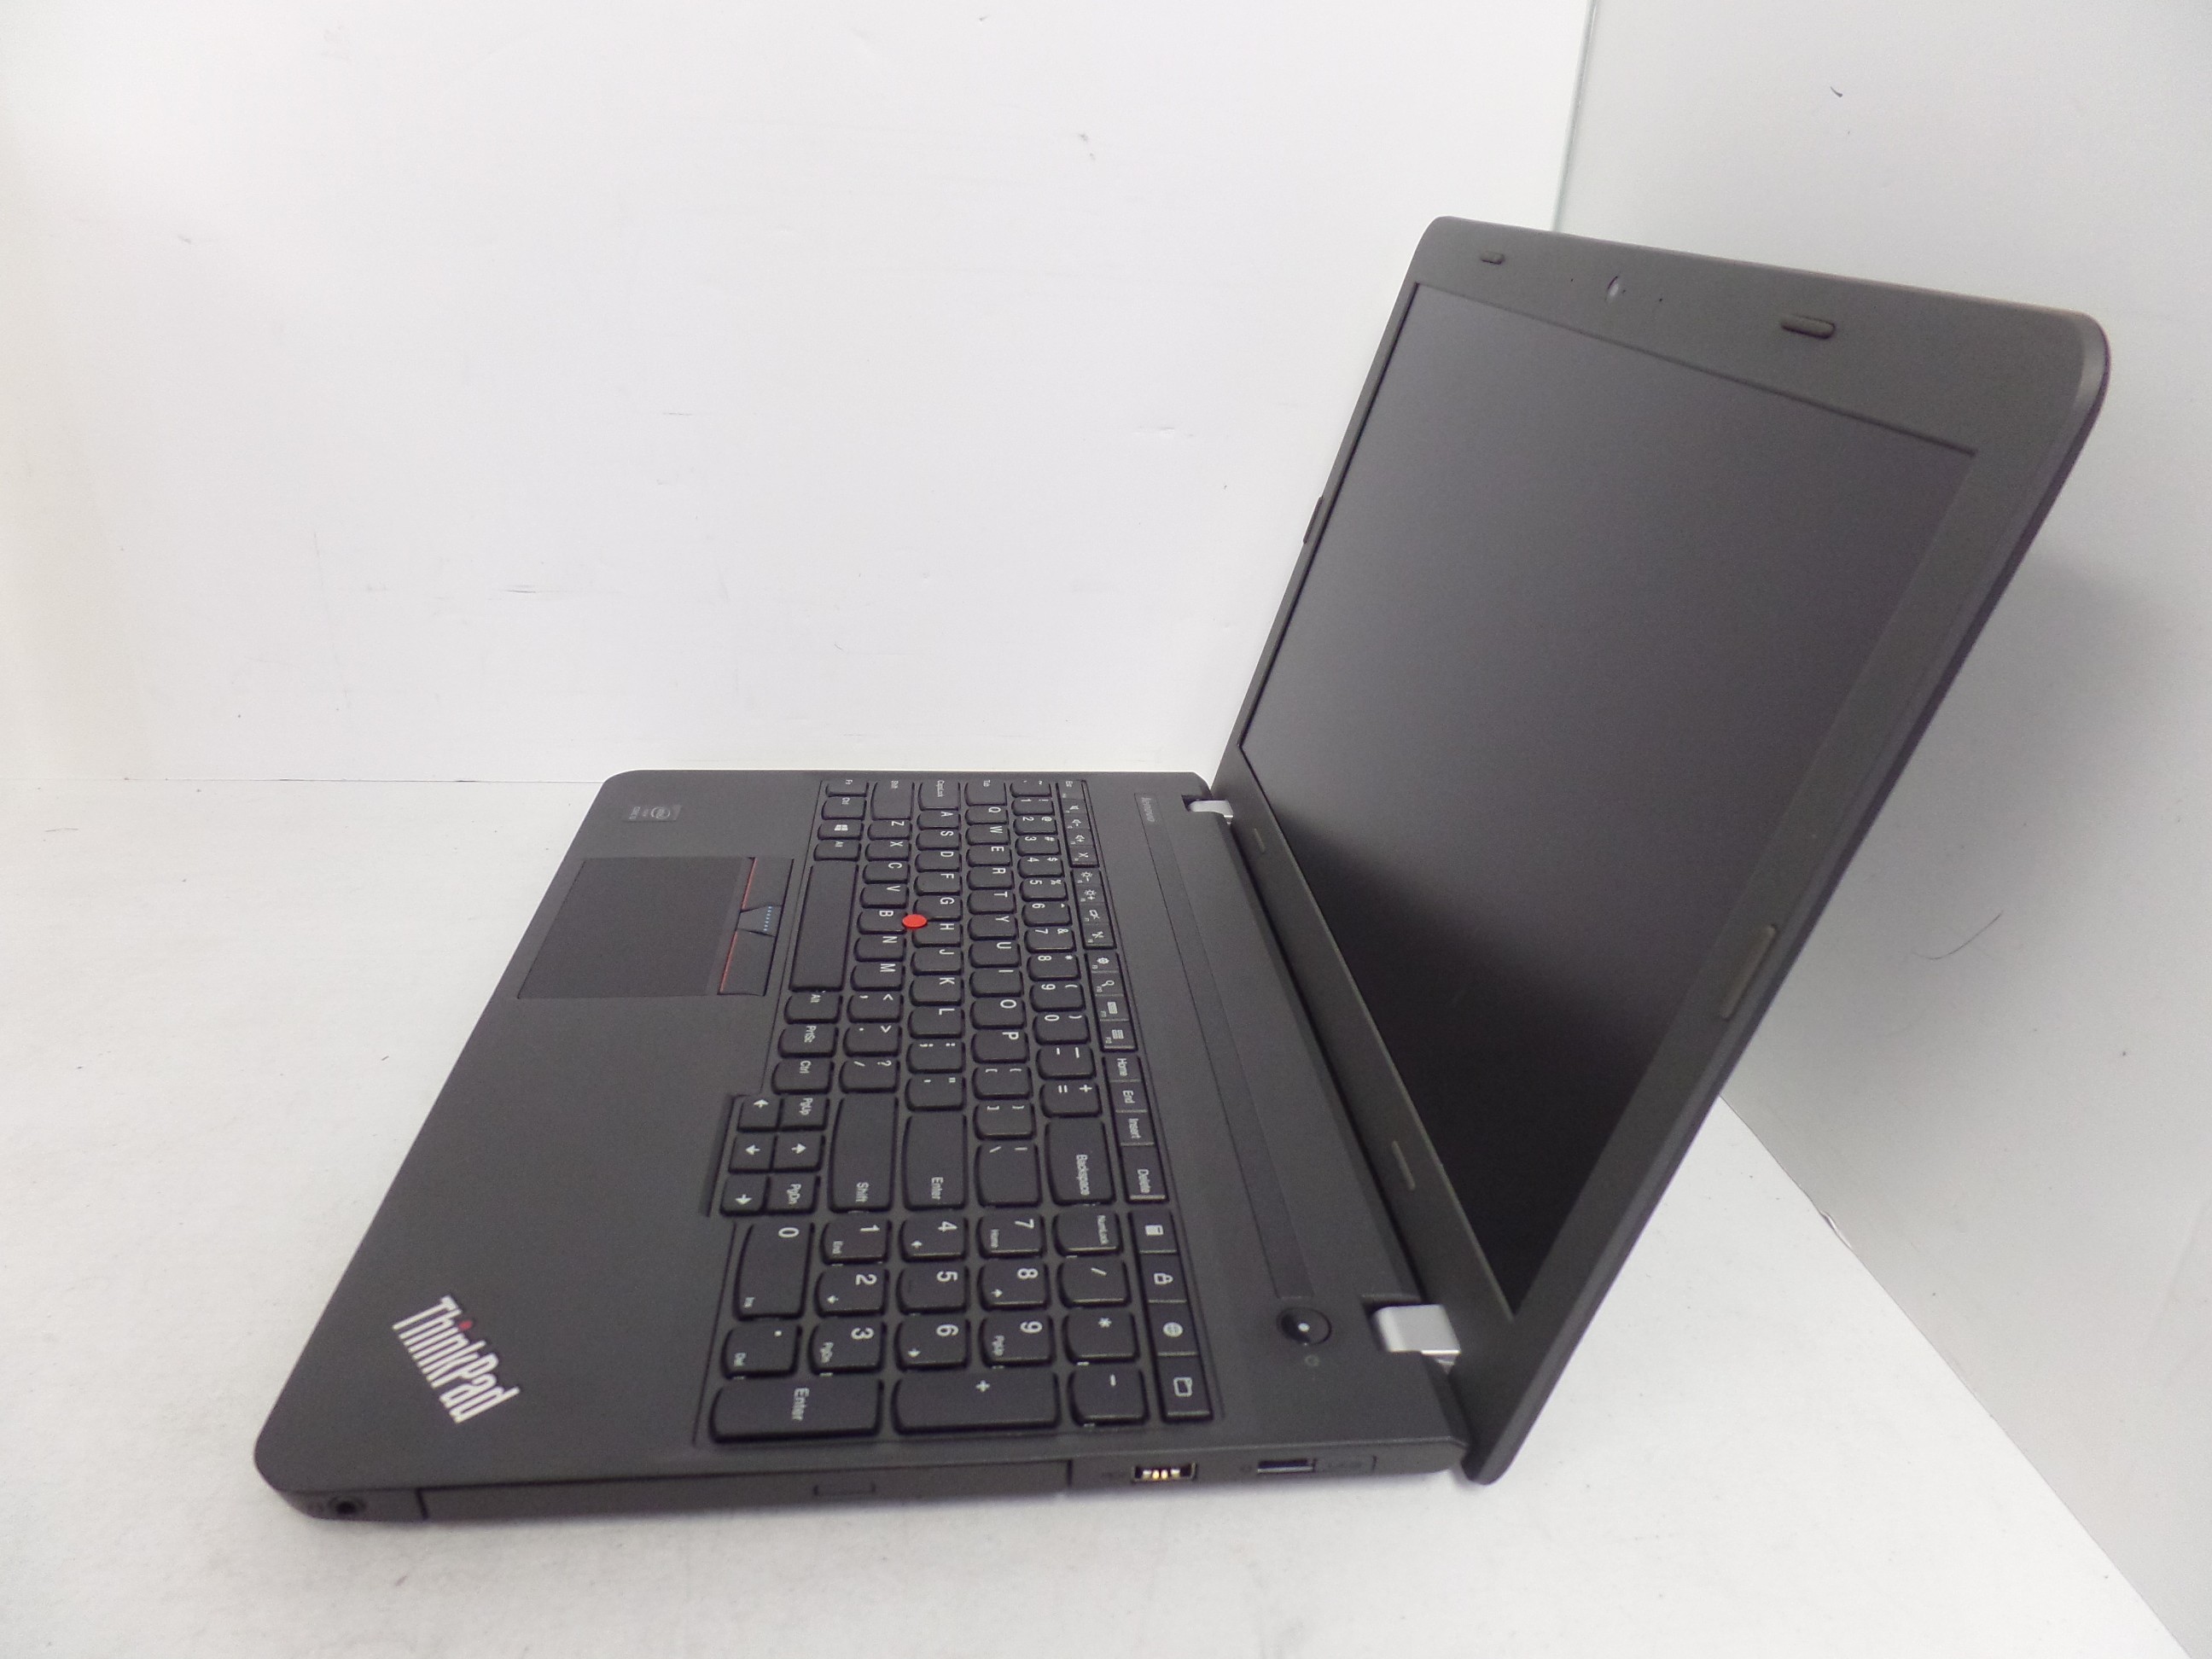 Laptop Best Buy Guide - Basislaptop - Lenovo ThinkPad E550 - Tweakers